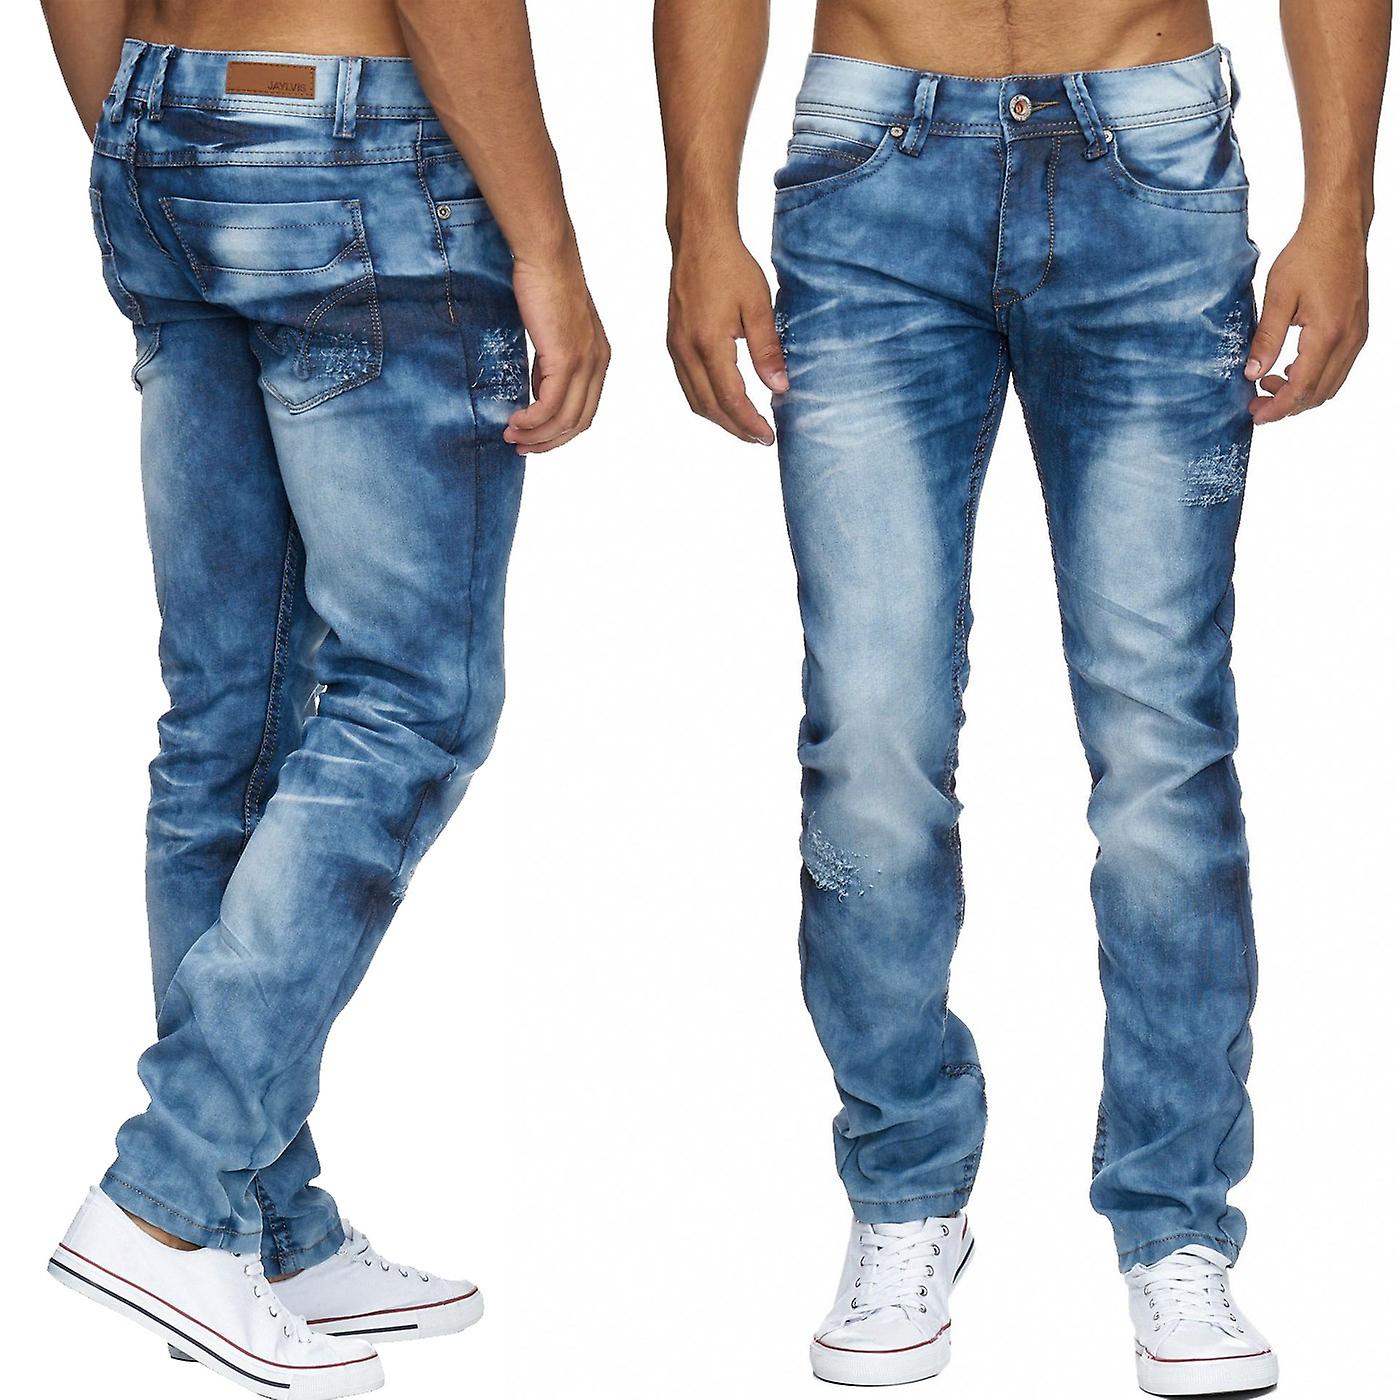 эффект складок на джинсах